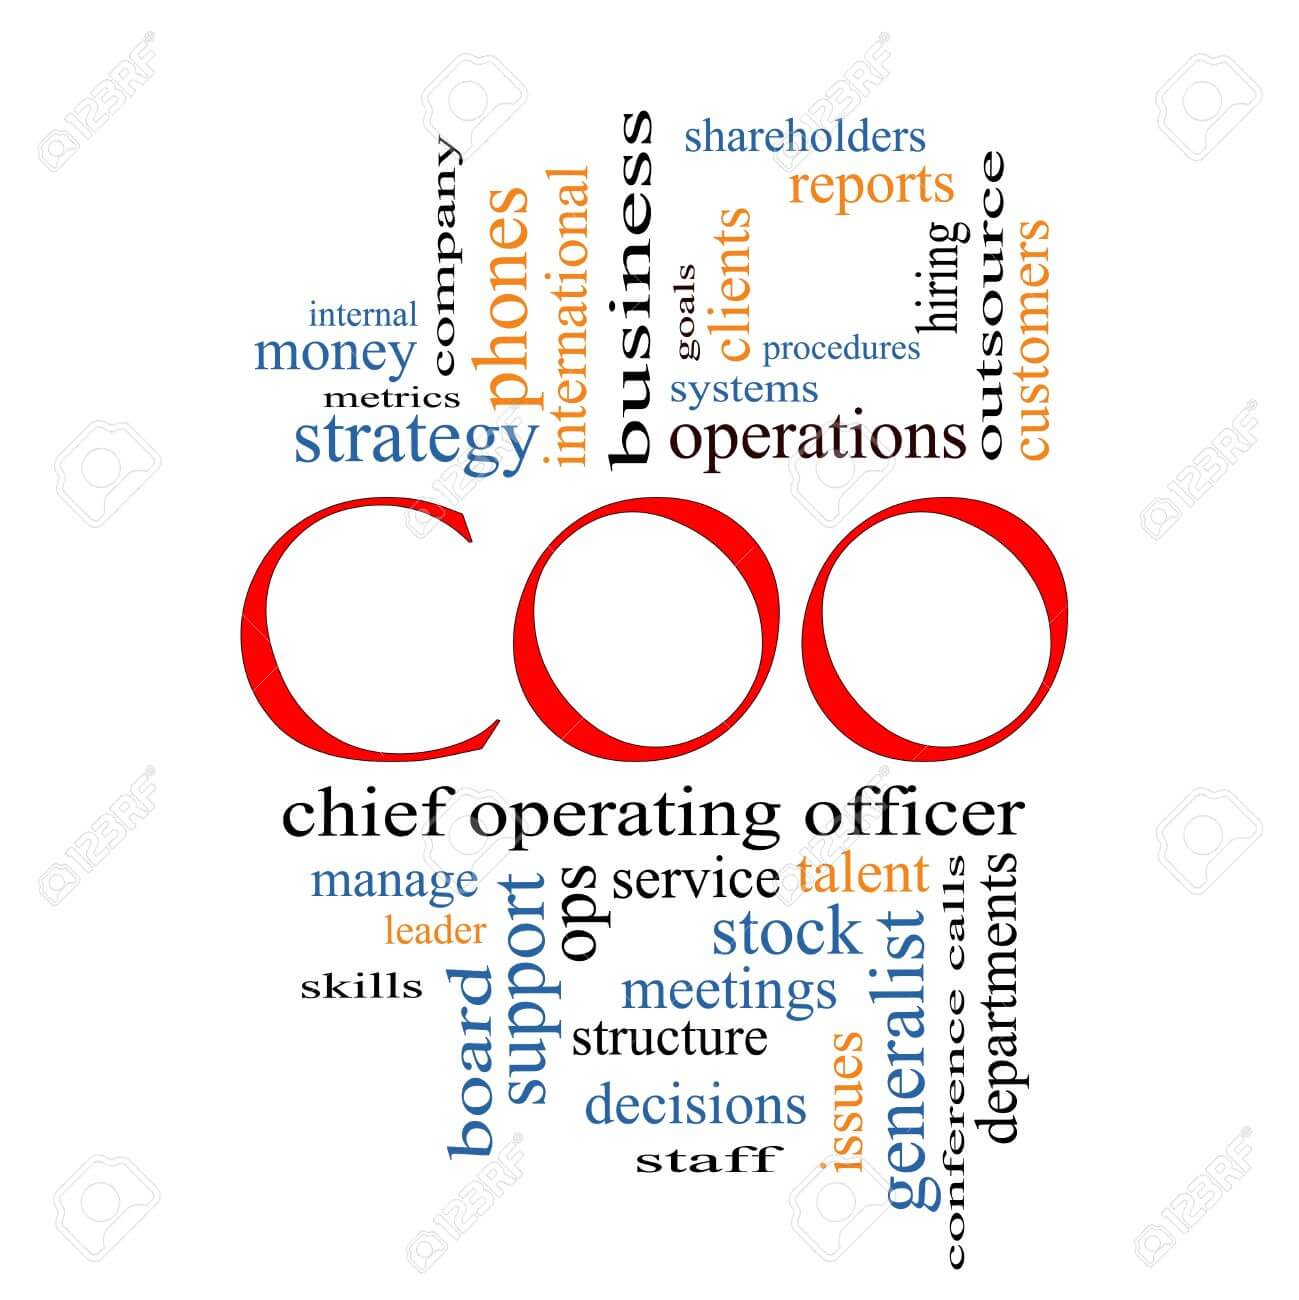 CCO là gì? đóng vai trò như thế nào? 